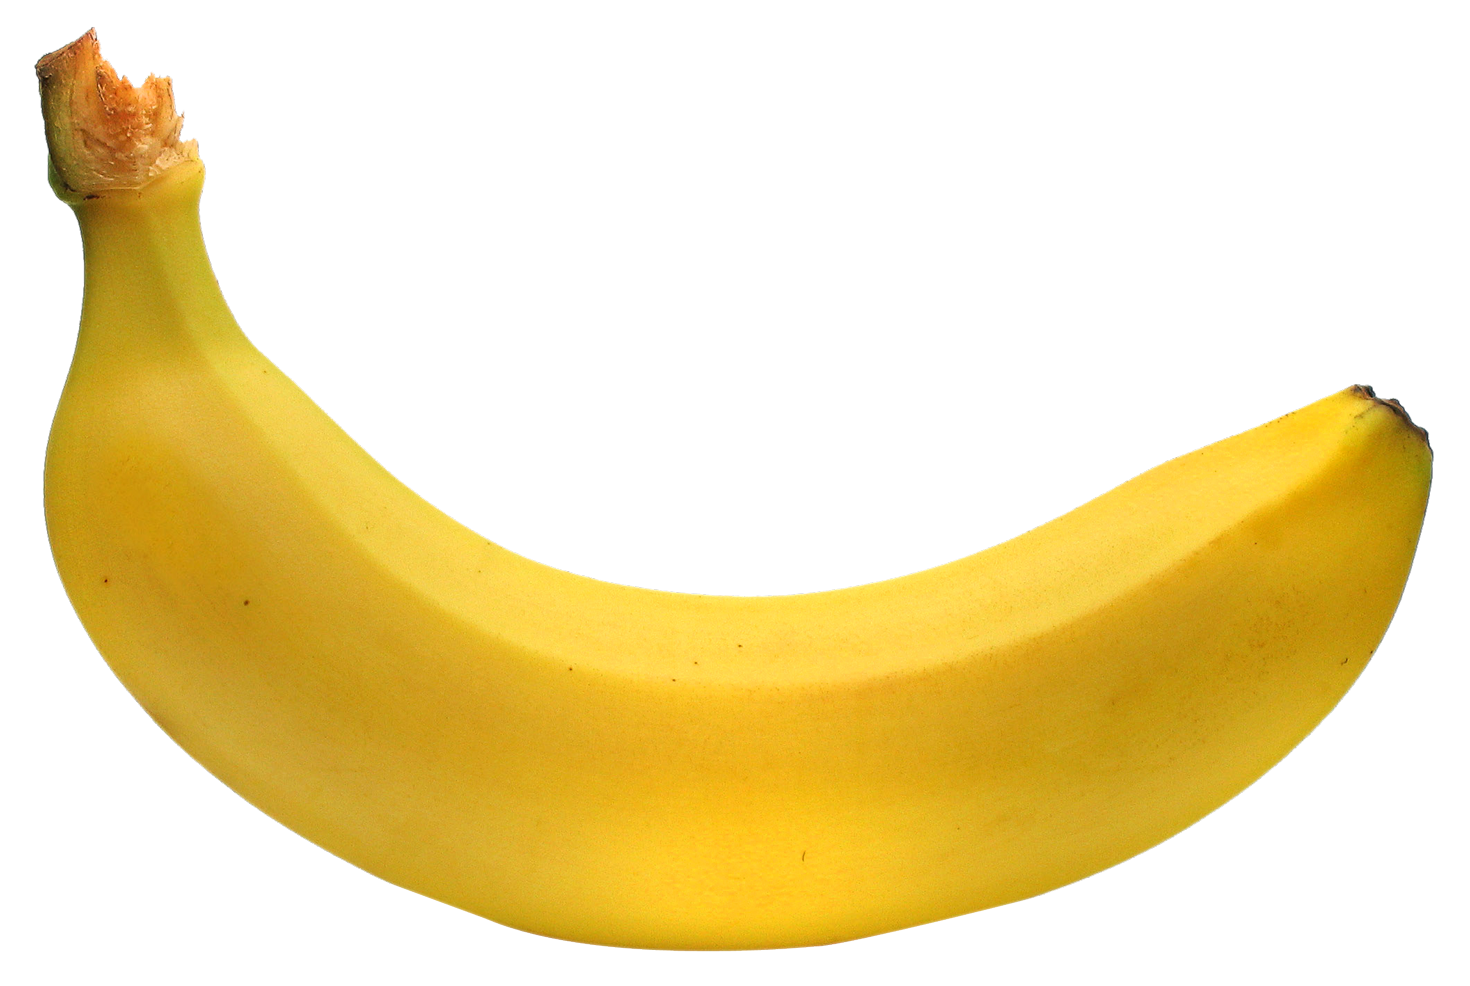 fresh ripe banana png image pngpix #12905